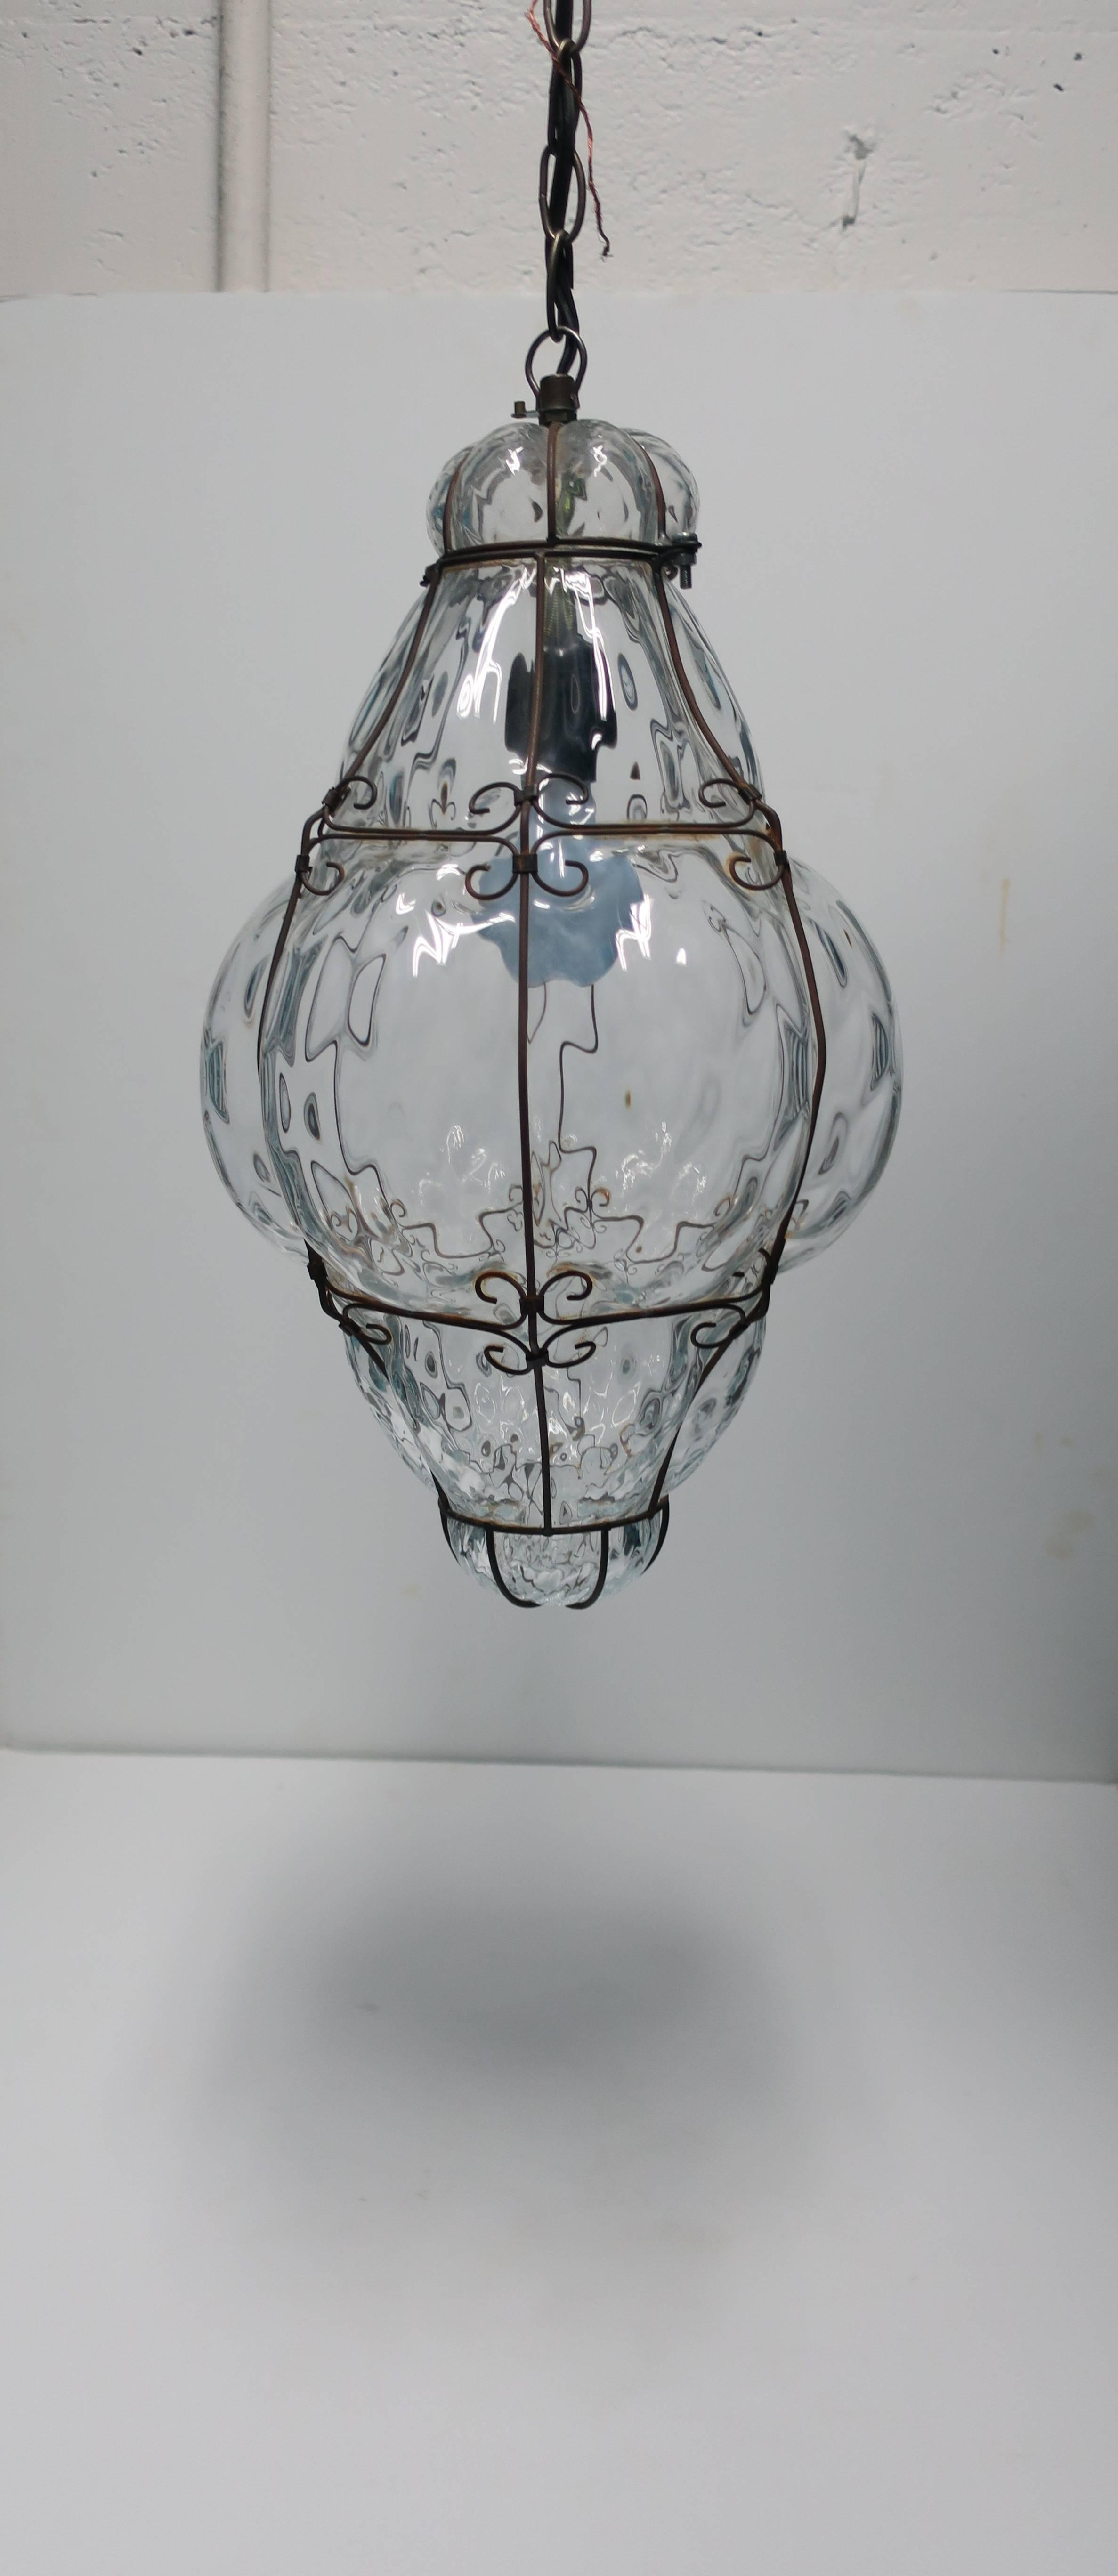 Une relativement grande, claire, italienne une lampe / ampoule lanterne pendante en verre soufflé à la main embrassée par le métal décoratif, Italie, vers les années 1950, Italie. En état de marche. 

Les mesures comprennent : 19,5